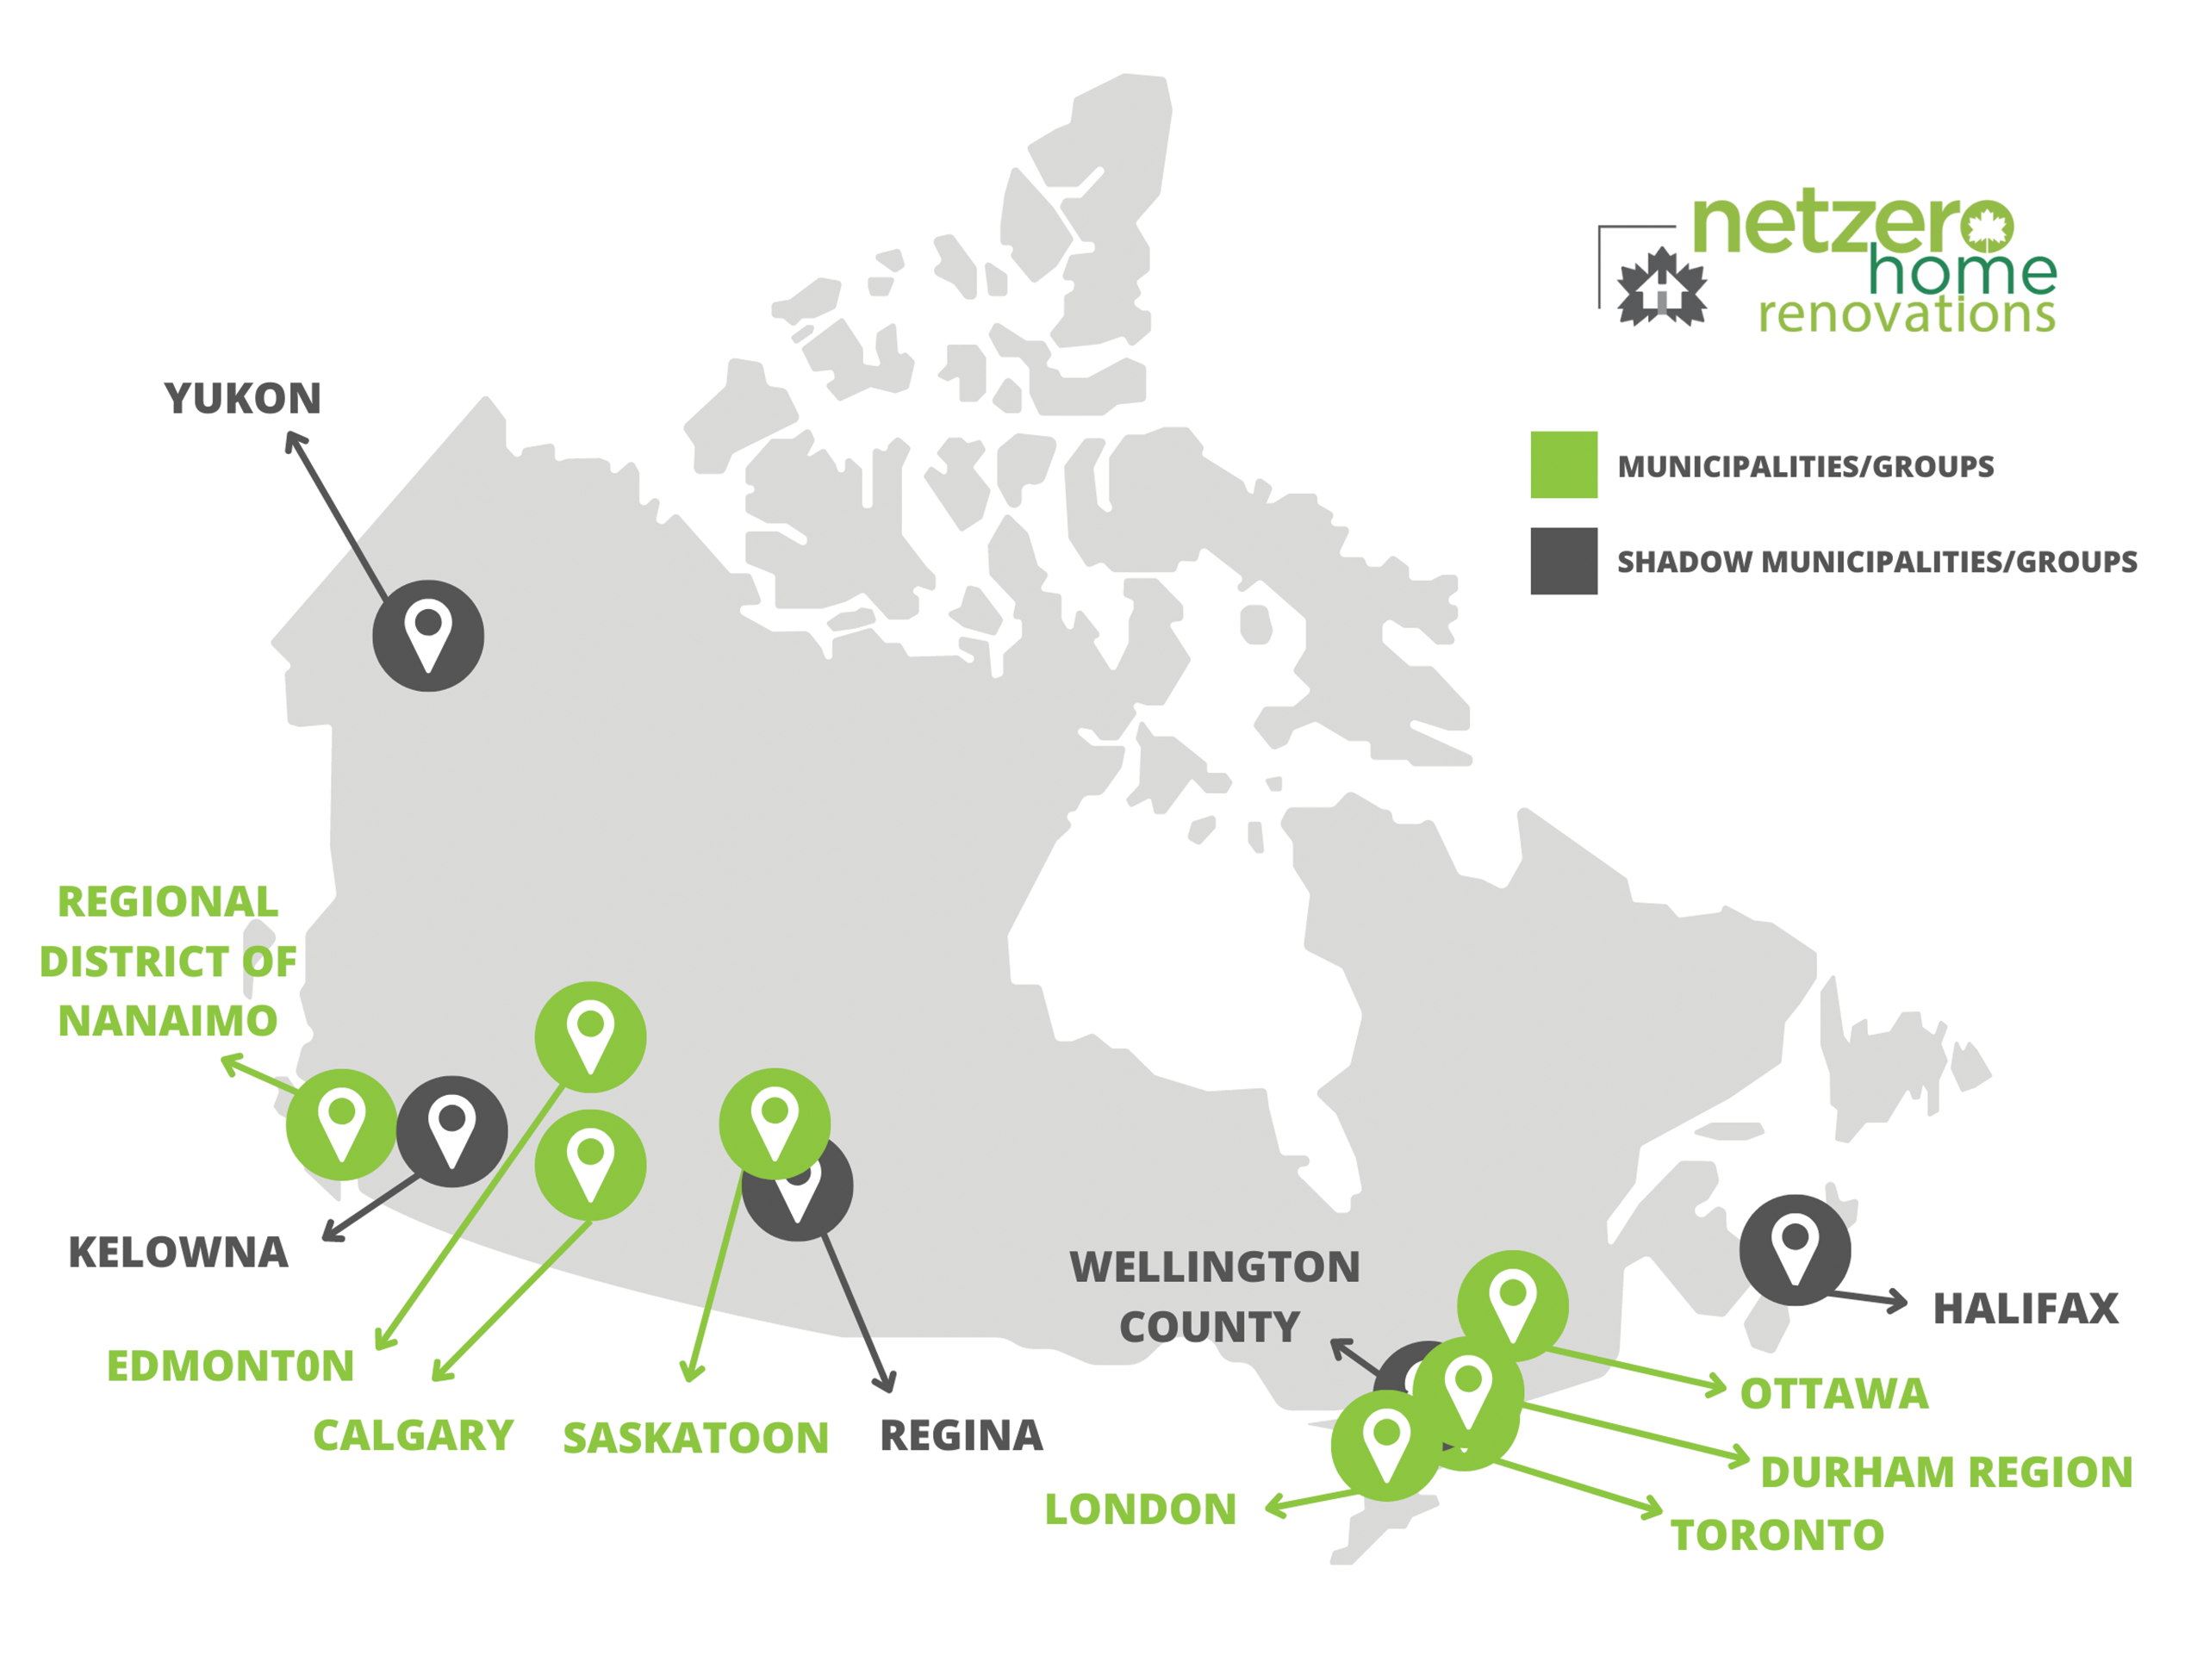 Net Zero Renovations municipalities map